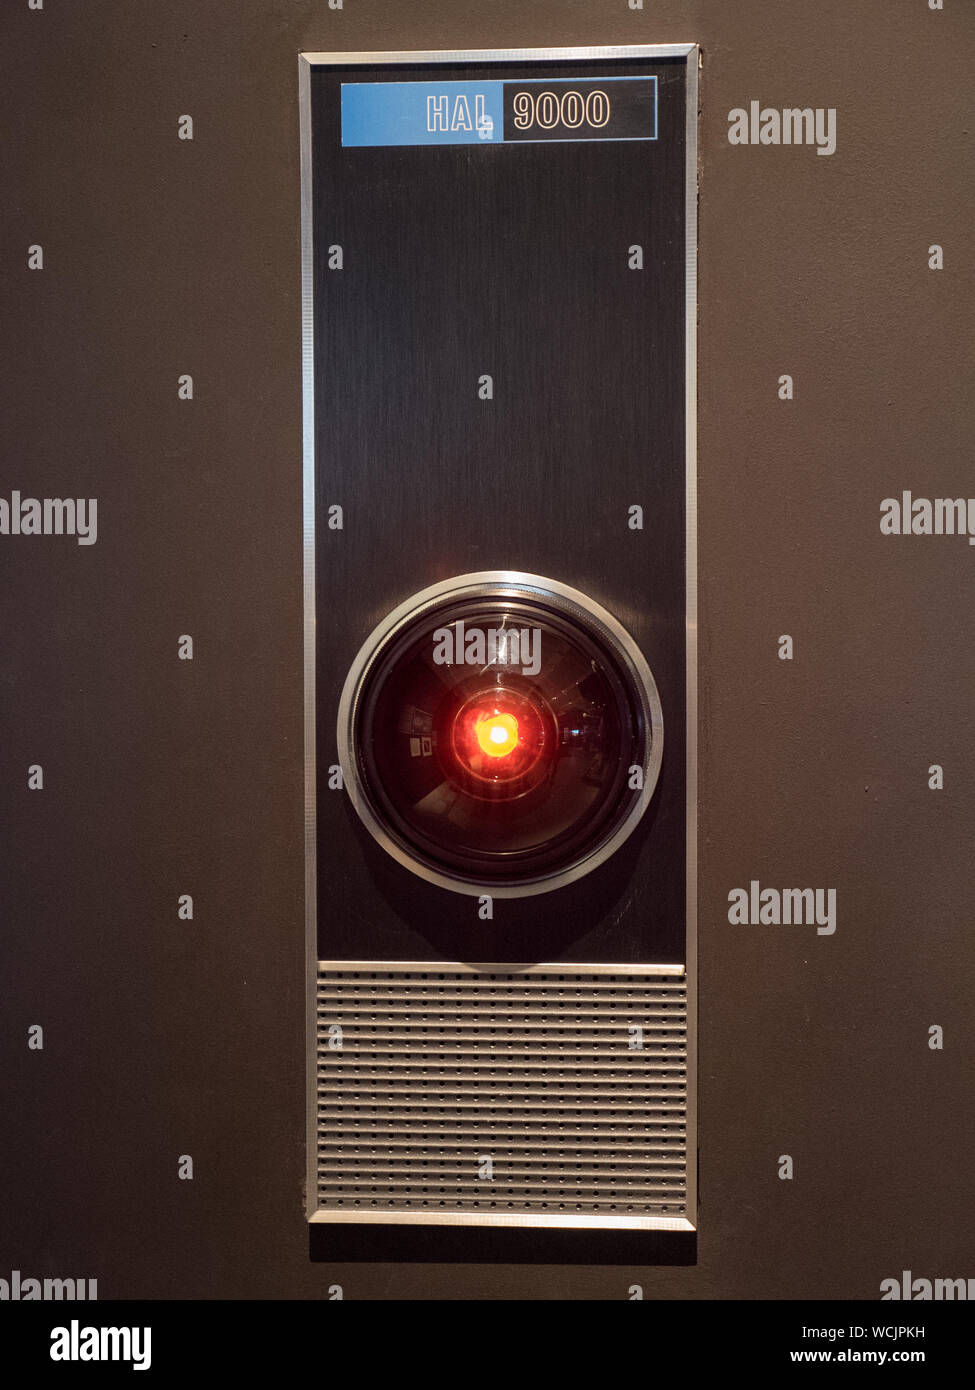 Hal 9000, 2001 Odissea nello spazio di Stanley Kubrick, la Mostra Design Museum, London REGNO UNITO Foto Stock